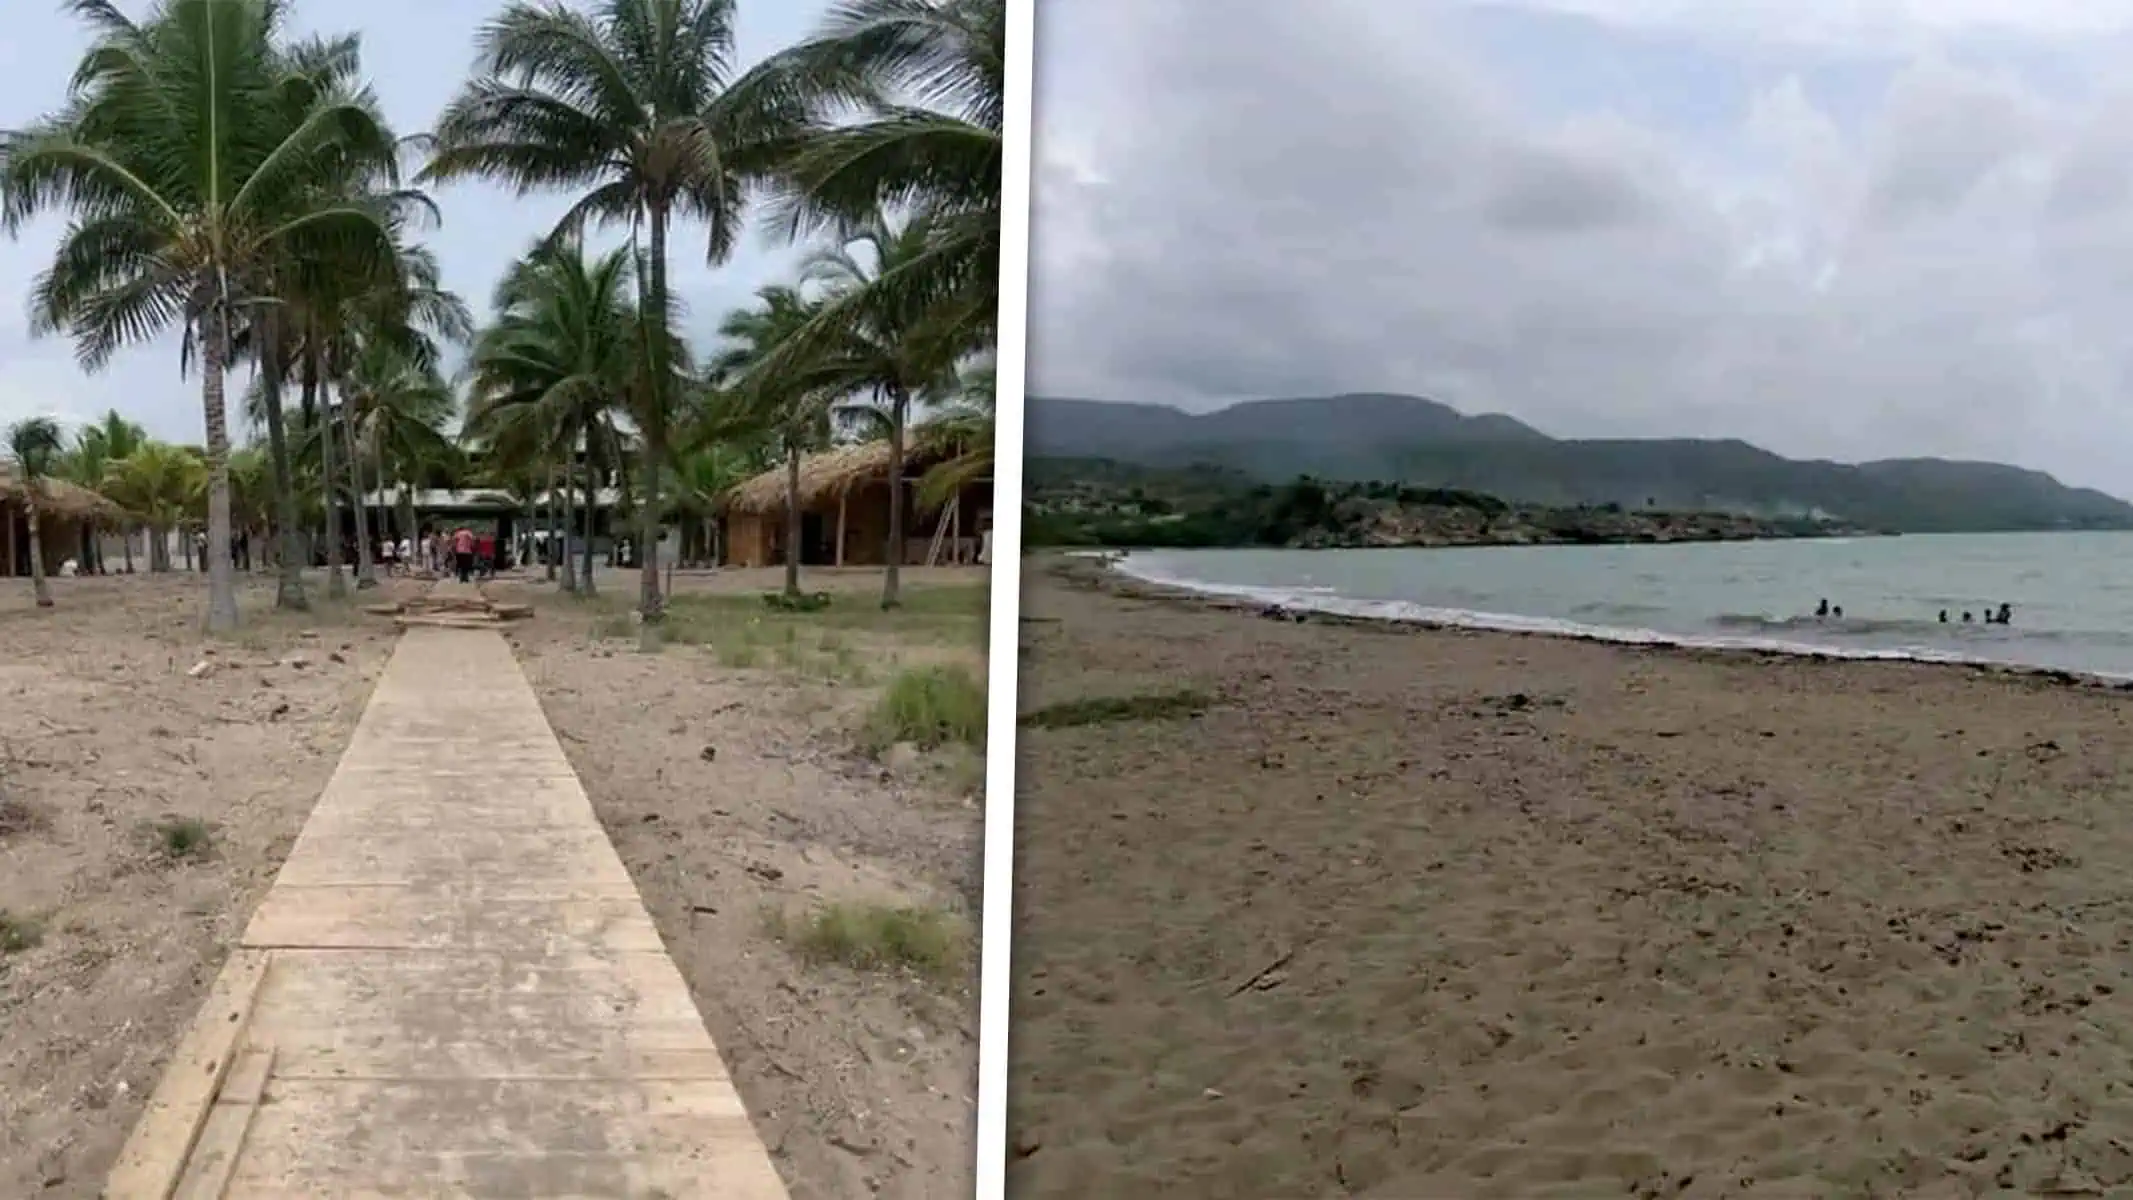 Reinaugurarán Popular Zona de Playa en Guantánamo Tras 10 Años Sin Funcionar